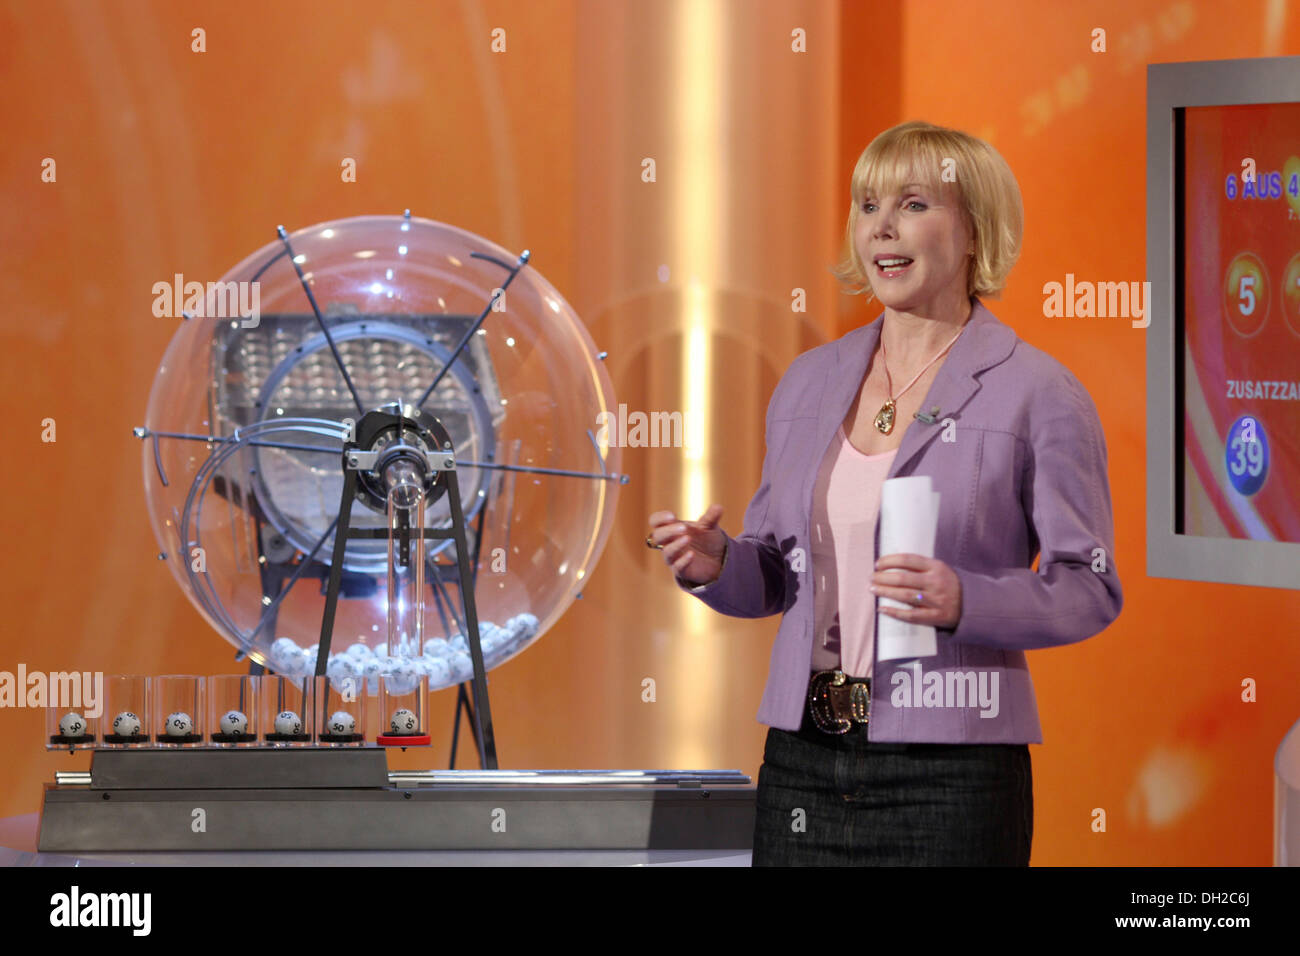 Presentador Lotto Heike Maurer moderar el sorteo de la lotería en el estudio de televisión, ZDF Mainz Foto de stock